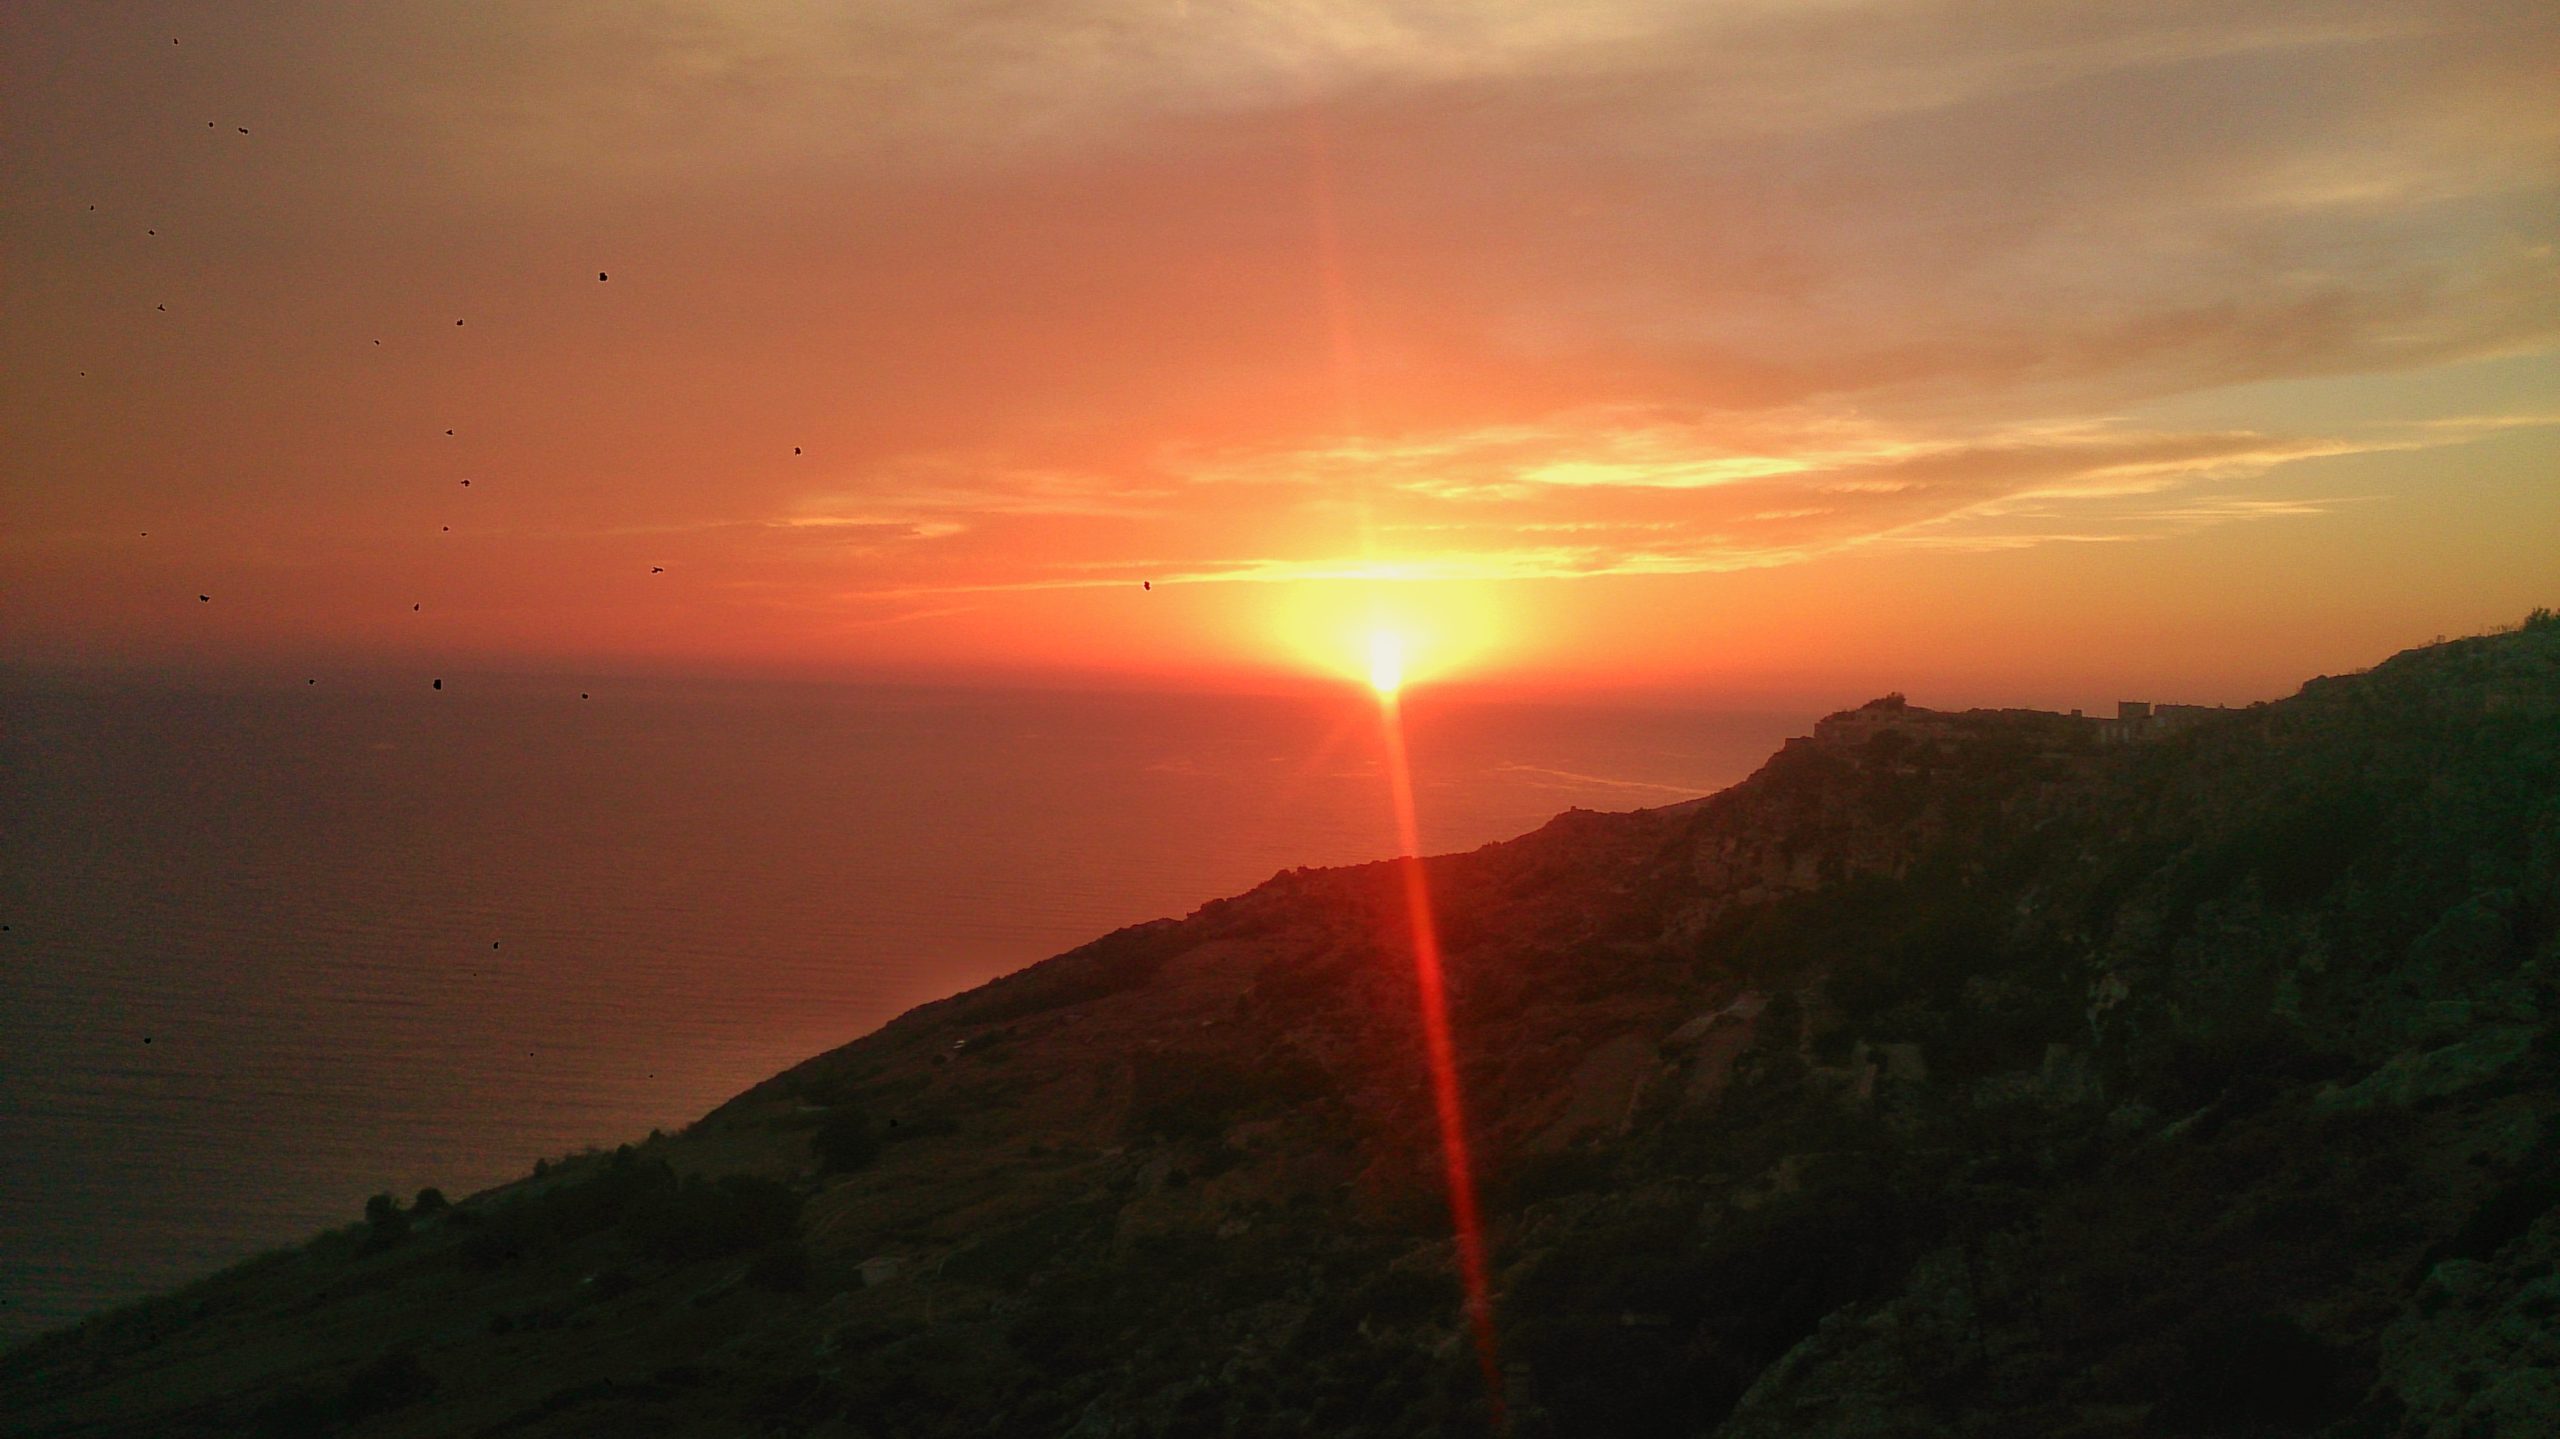 Sunset at Dingli Cliffs, Malta